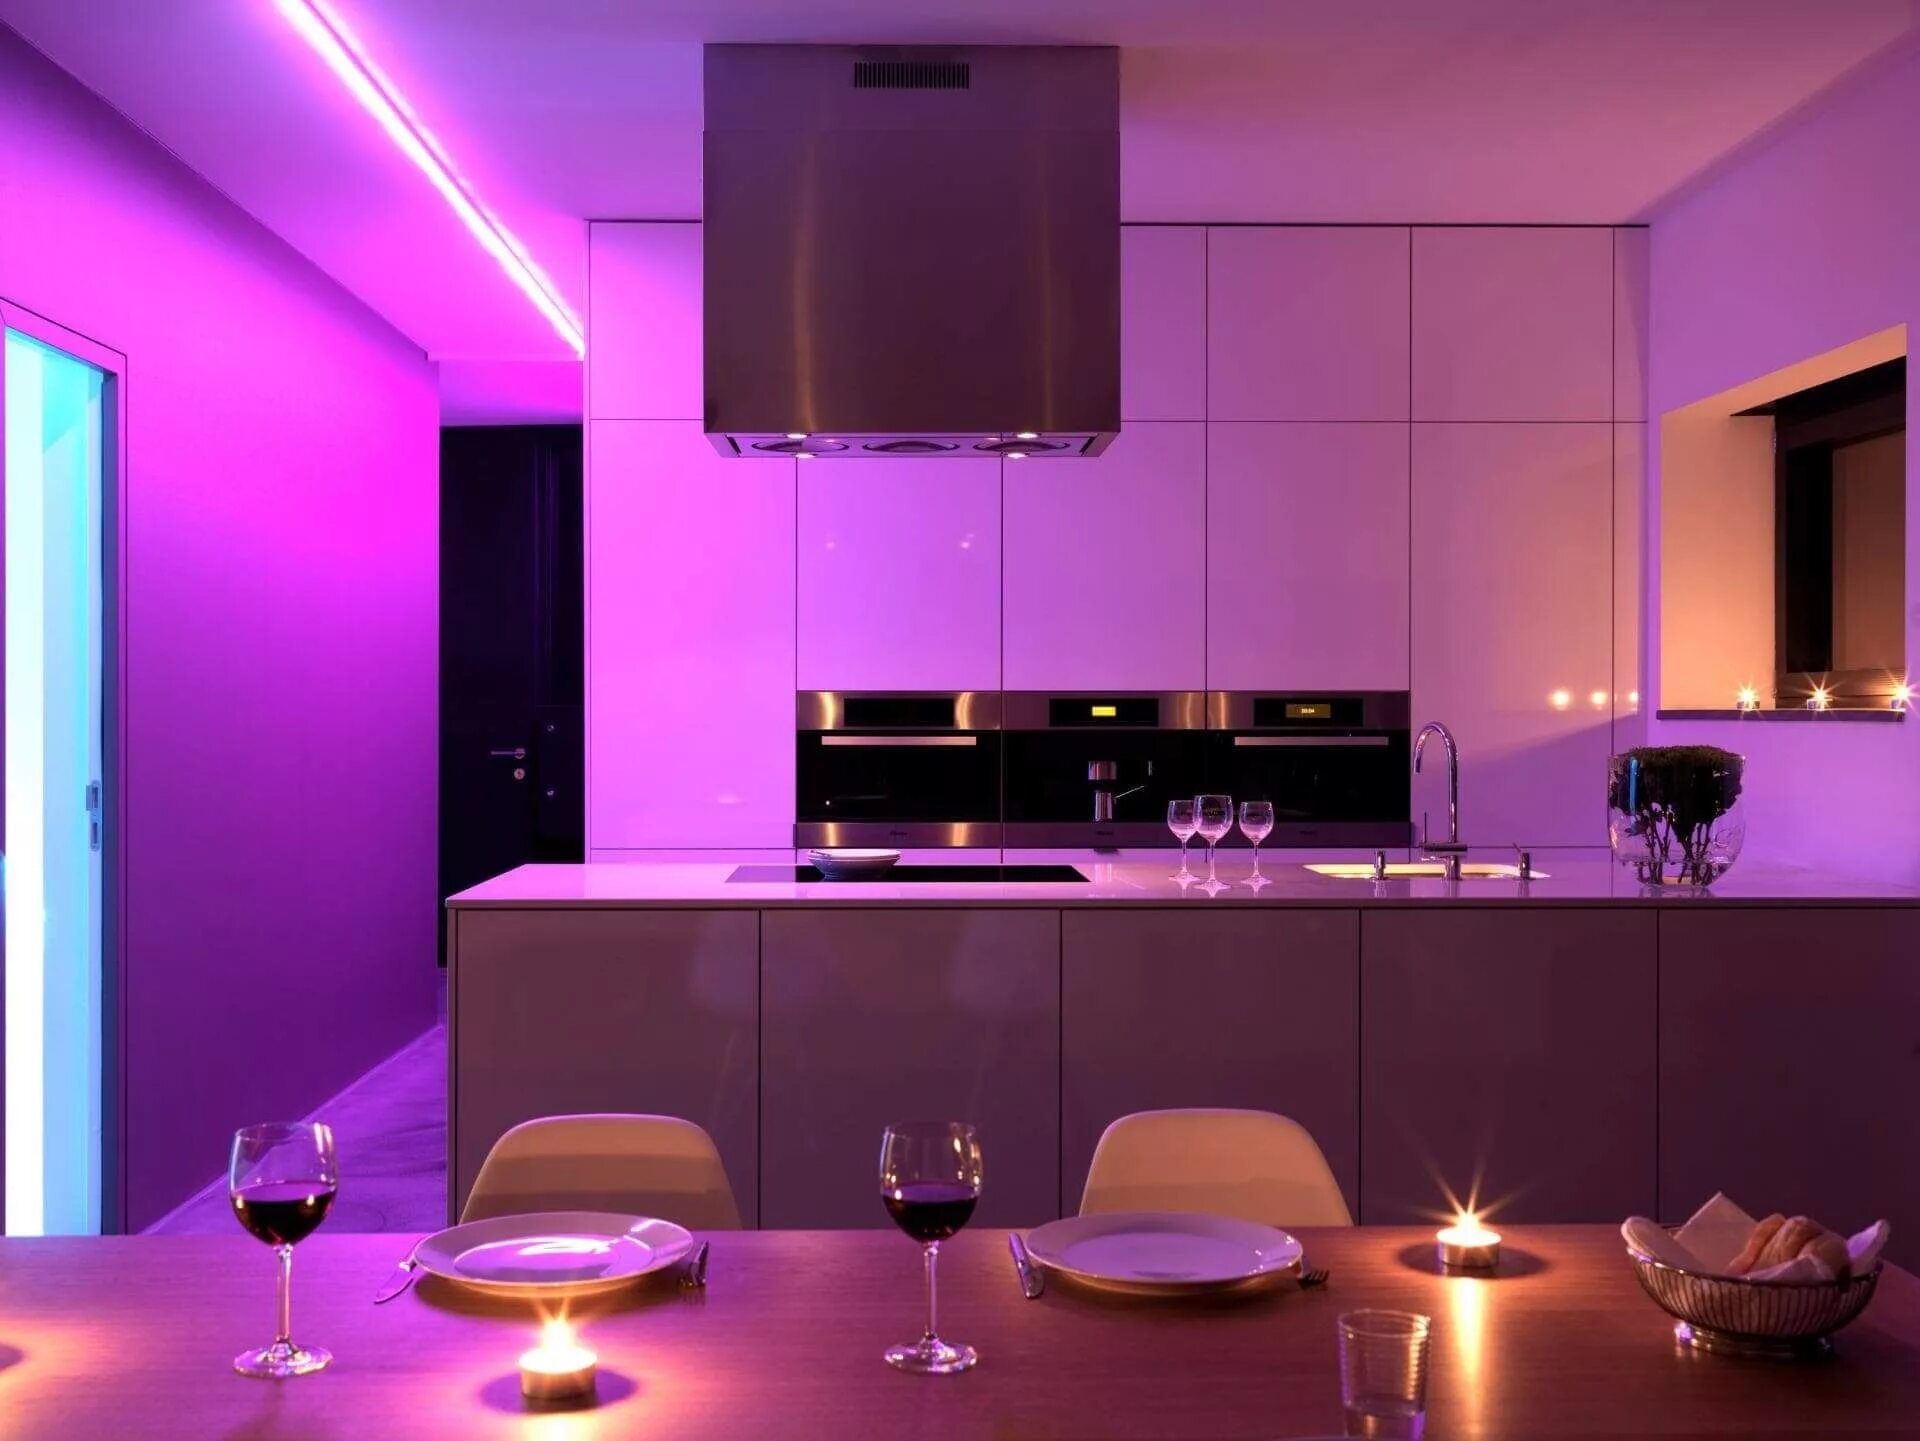 Фиолетовая РГБ подсветка. Светодиодная лента РГБ В интерьере. Подсветка для кухни. Светодиодная лента в интерьере кухни. Colorful lighting